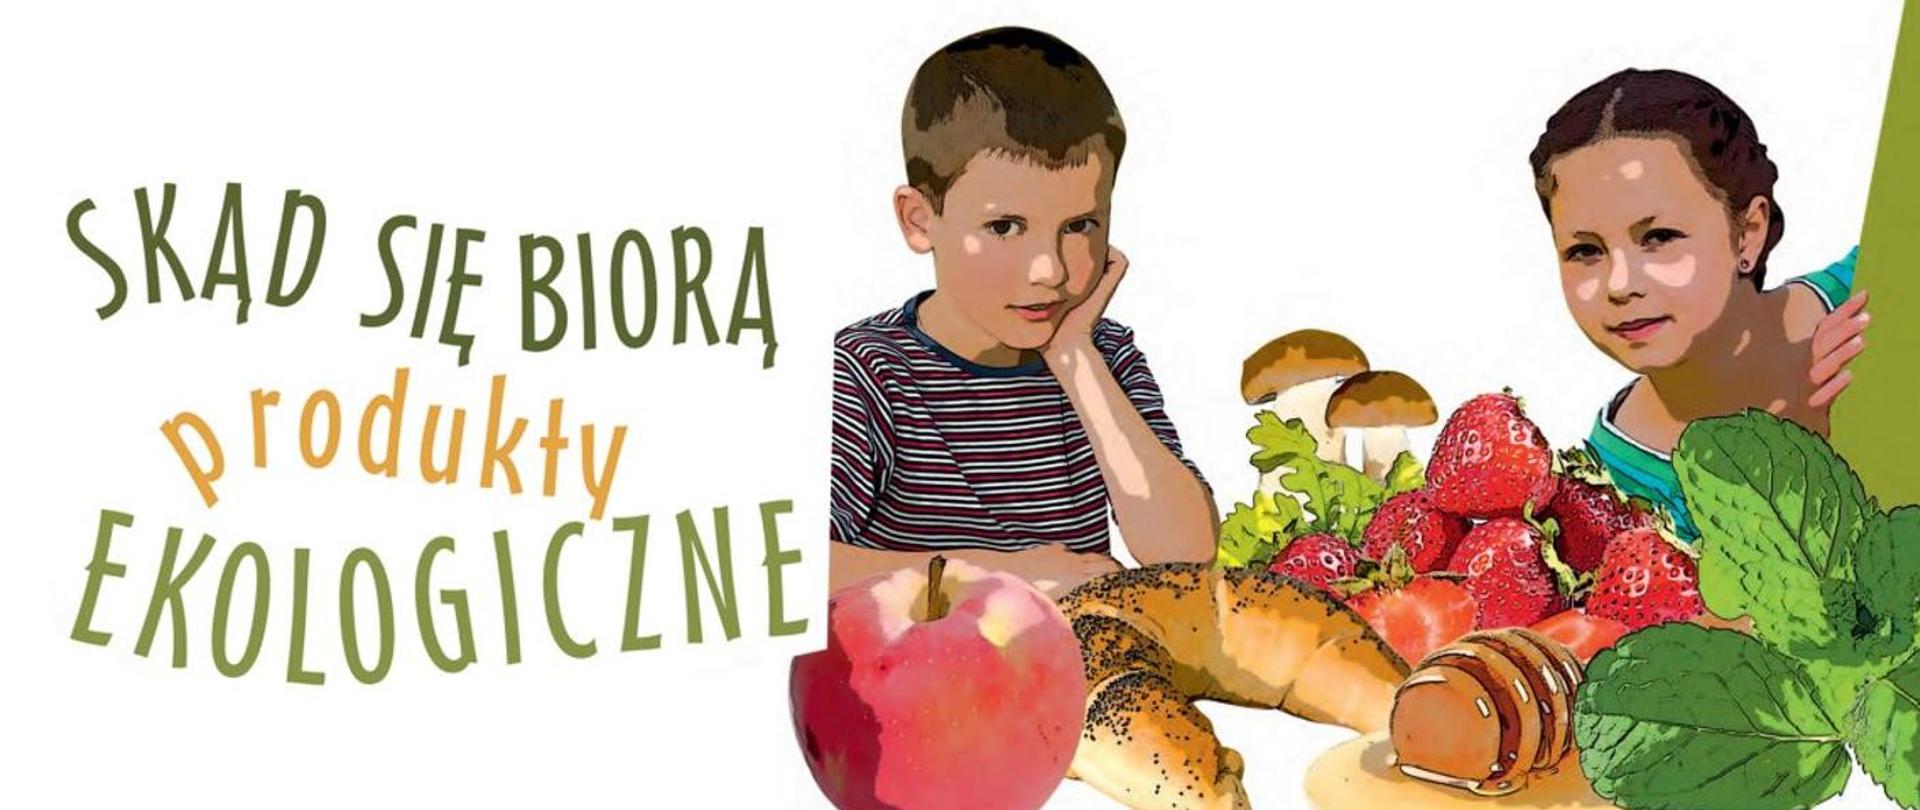 Zdjęcie przedstawia dwójkę dzieci pośród owoców i warzyw, po lewej stronie na białym tle widnieje napis: "Skąd się biorą produkty ekologiczne"